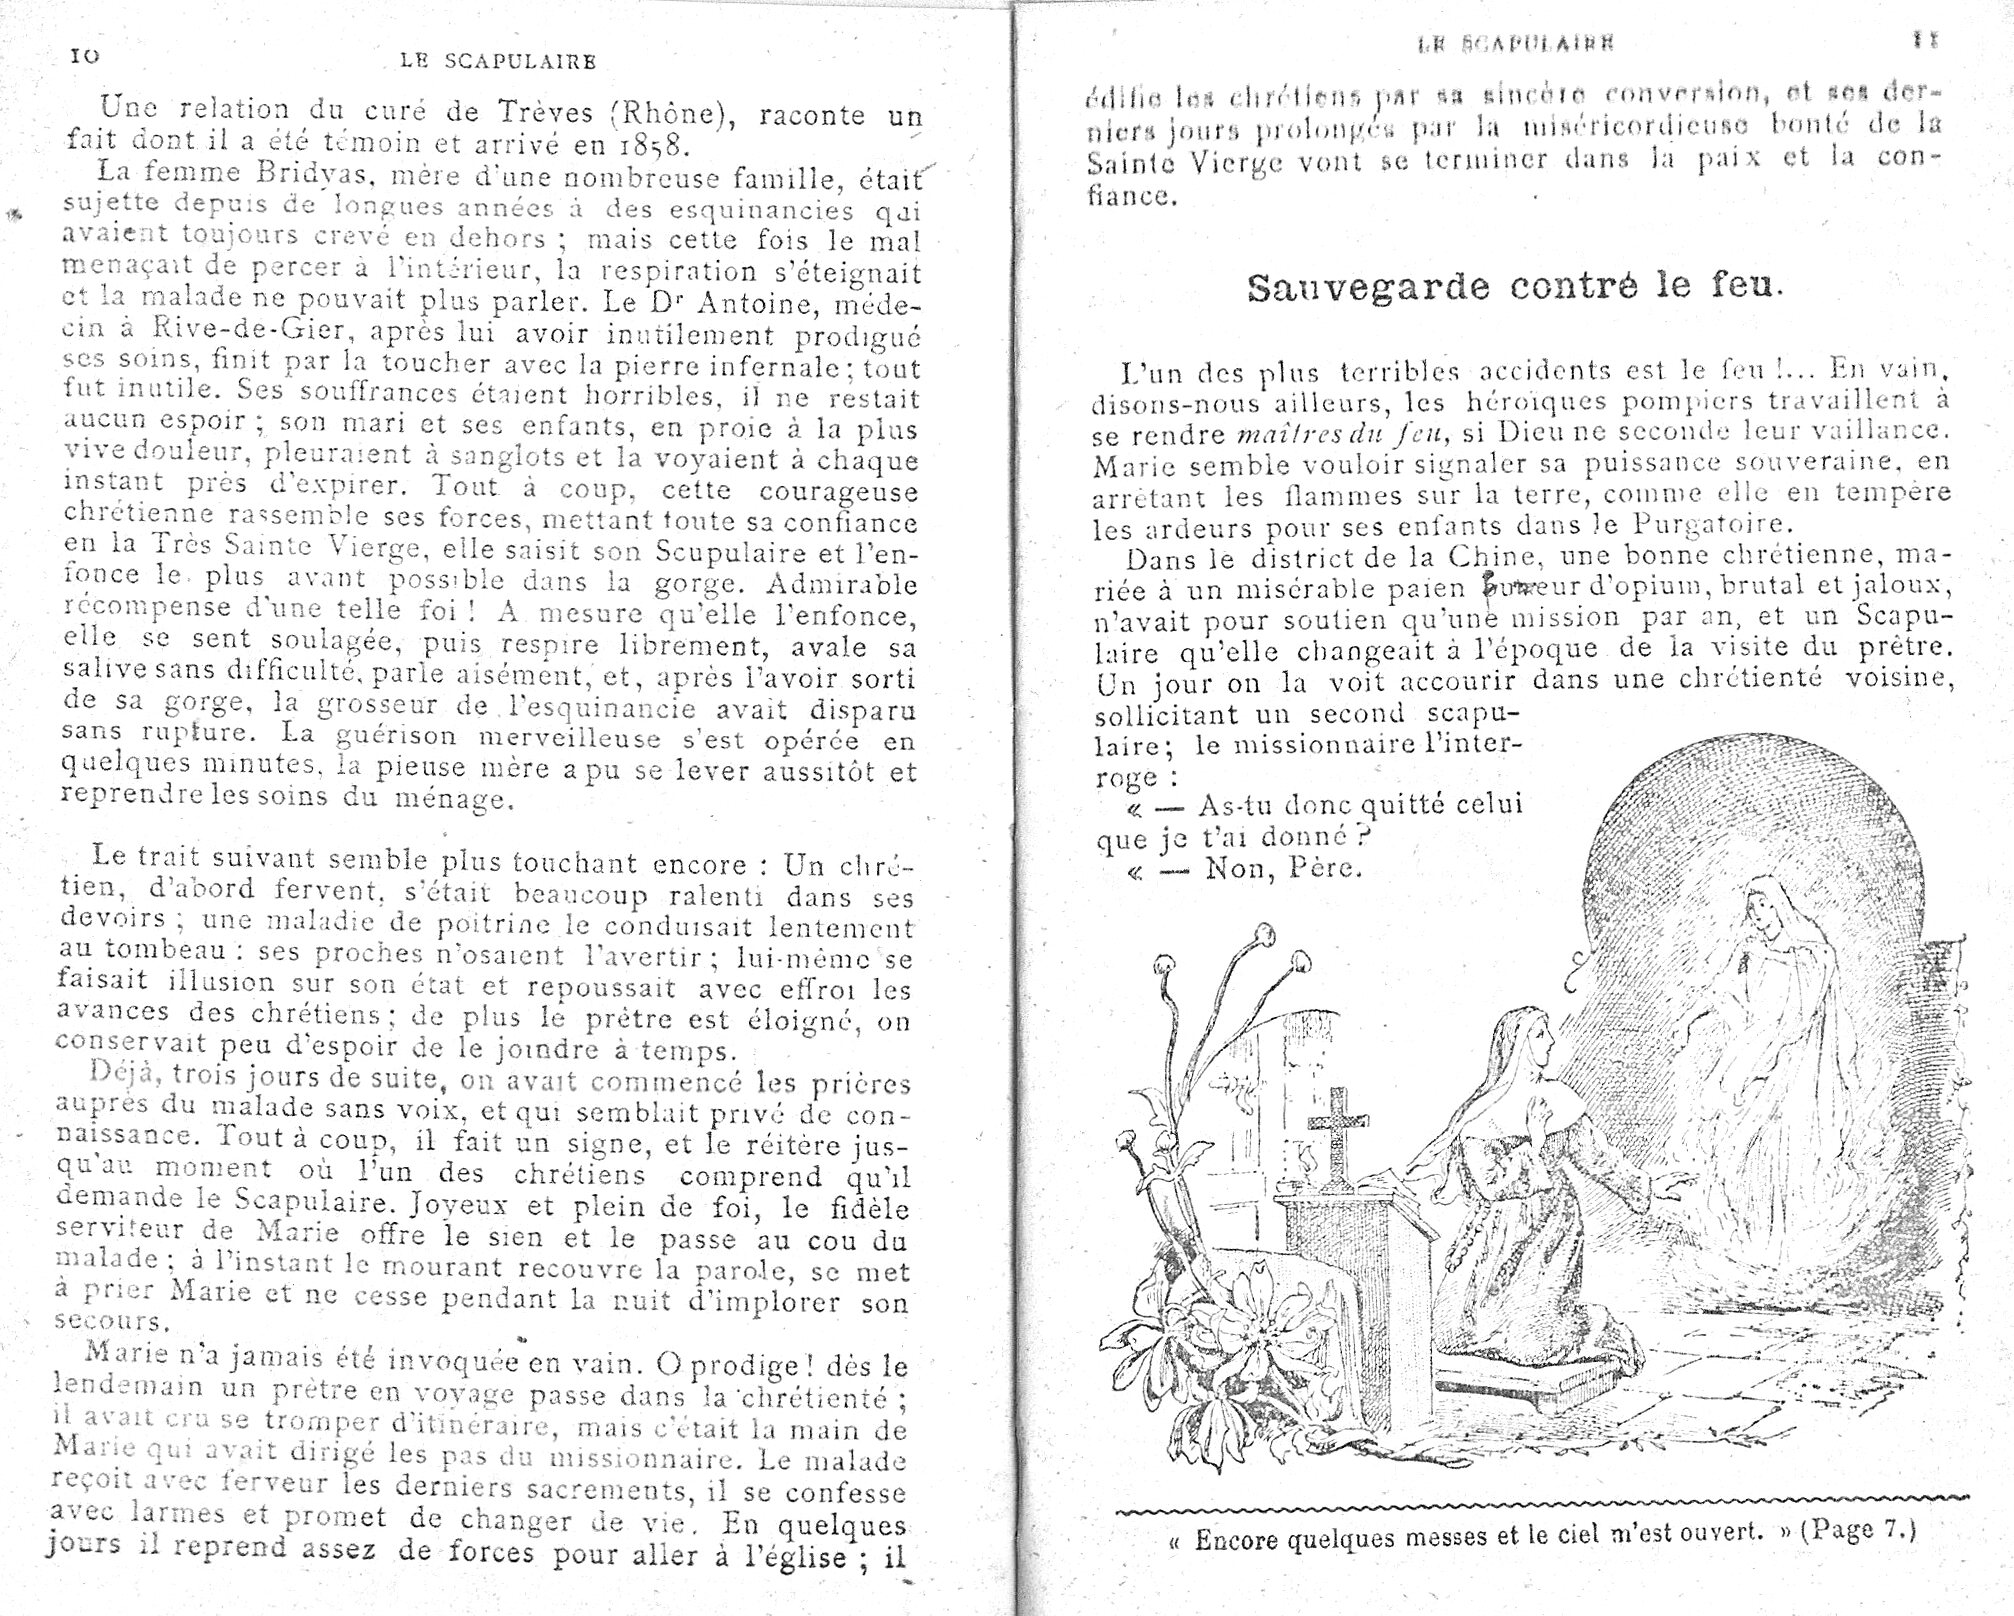 Histoires sur le Scapulaire de Notre-Dame du Mont-Carmel - Page 2 Le_sca15